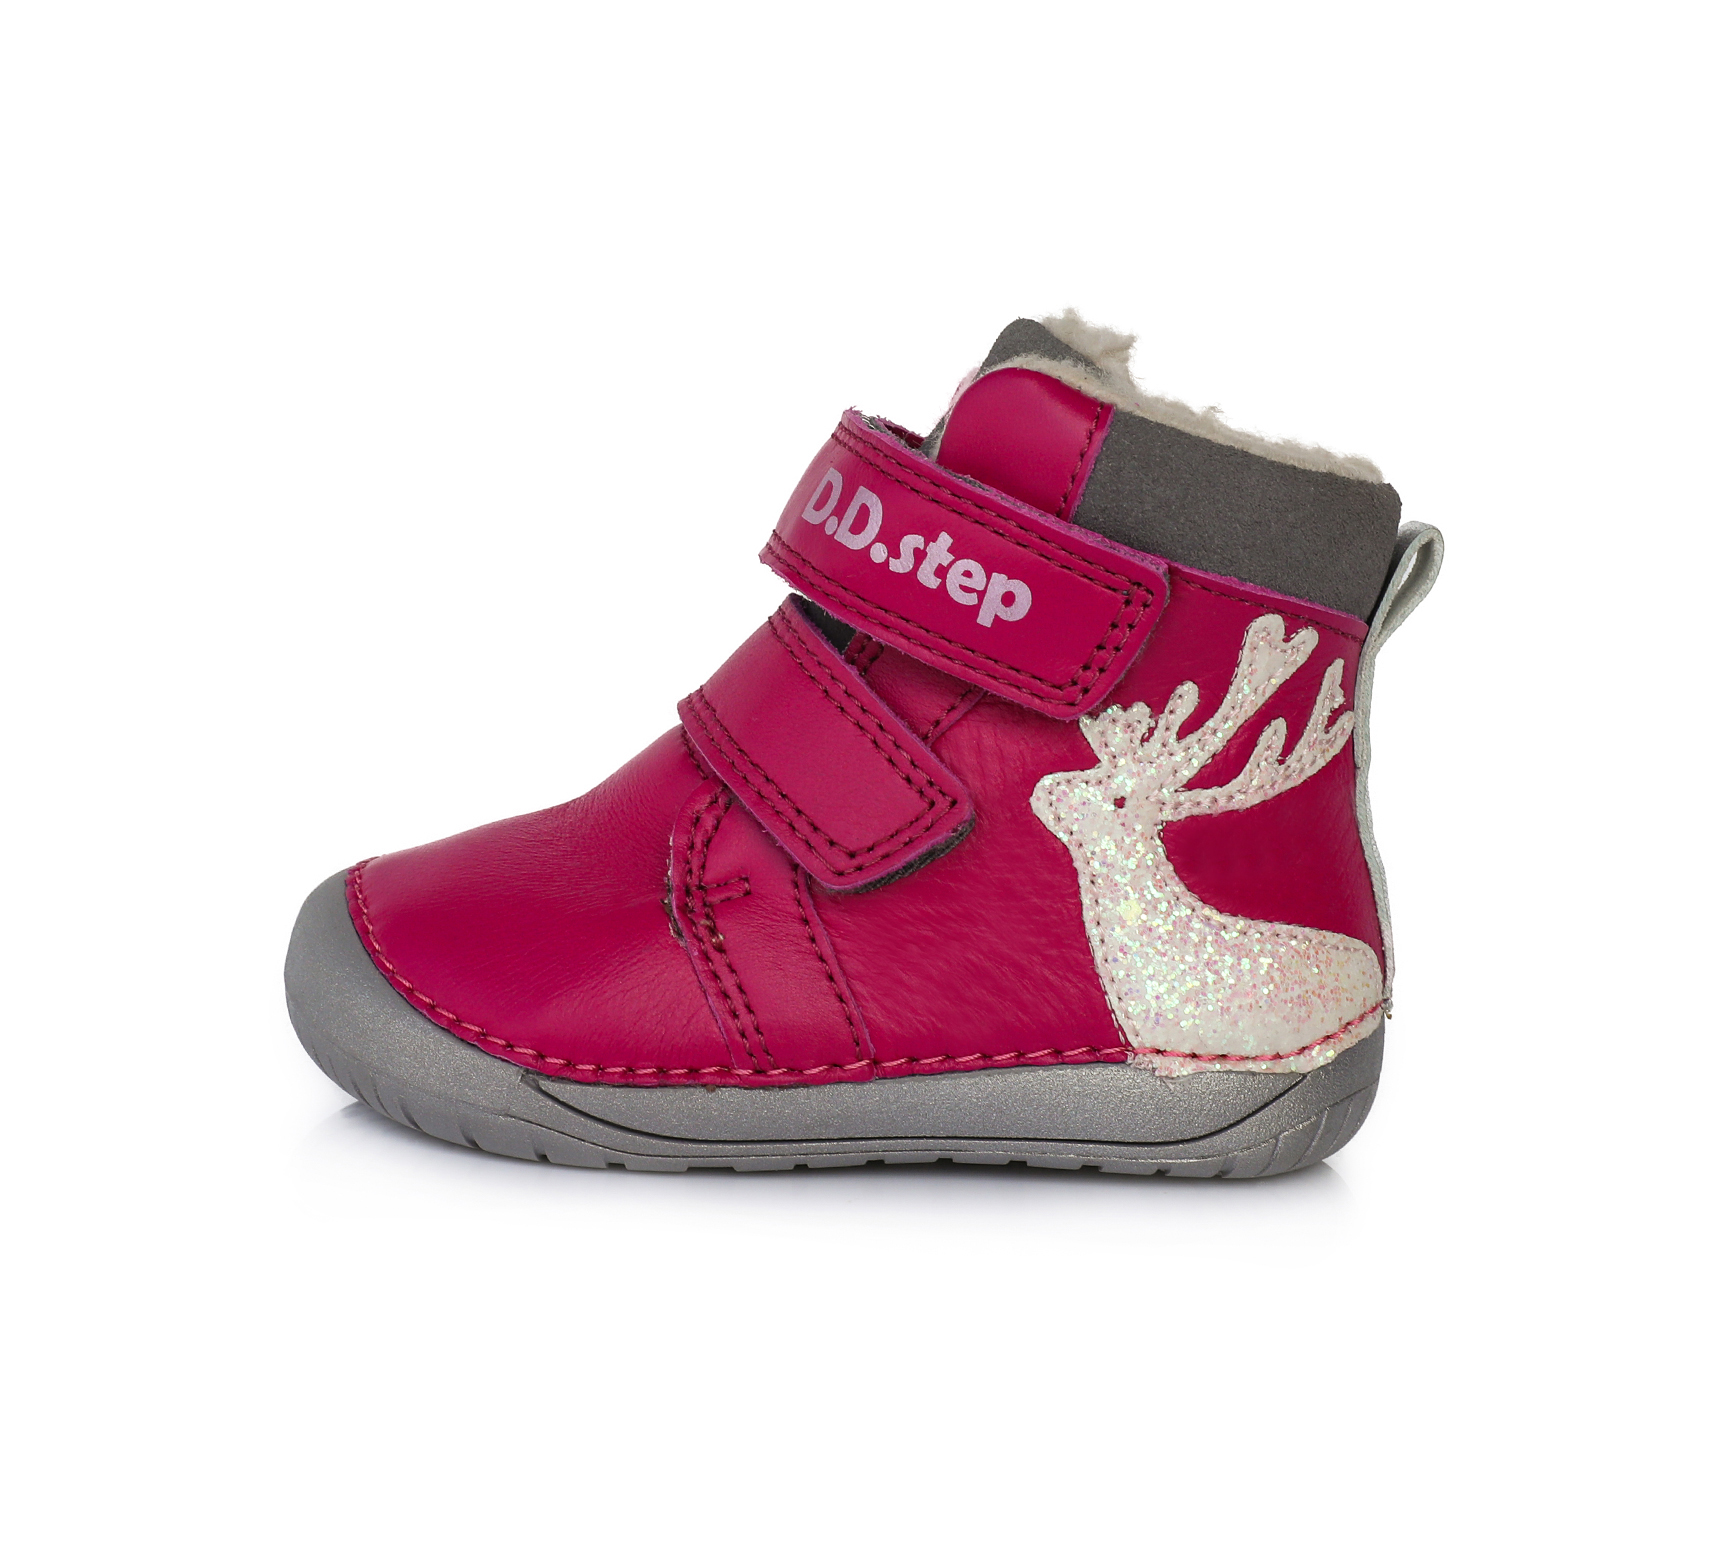 D.D.Step nahast talvesaapad, Dark Pink, Kitesekesega D.D.Step - HellyK - Kvaliteetsed lasteriided, villariided, barefoot jalatsid